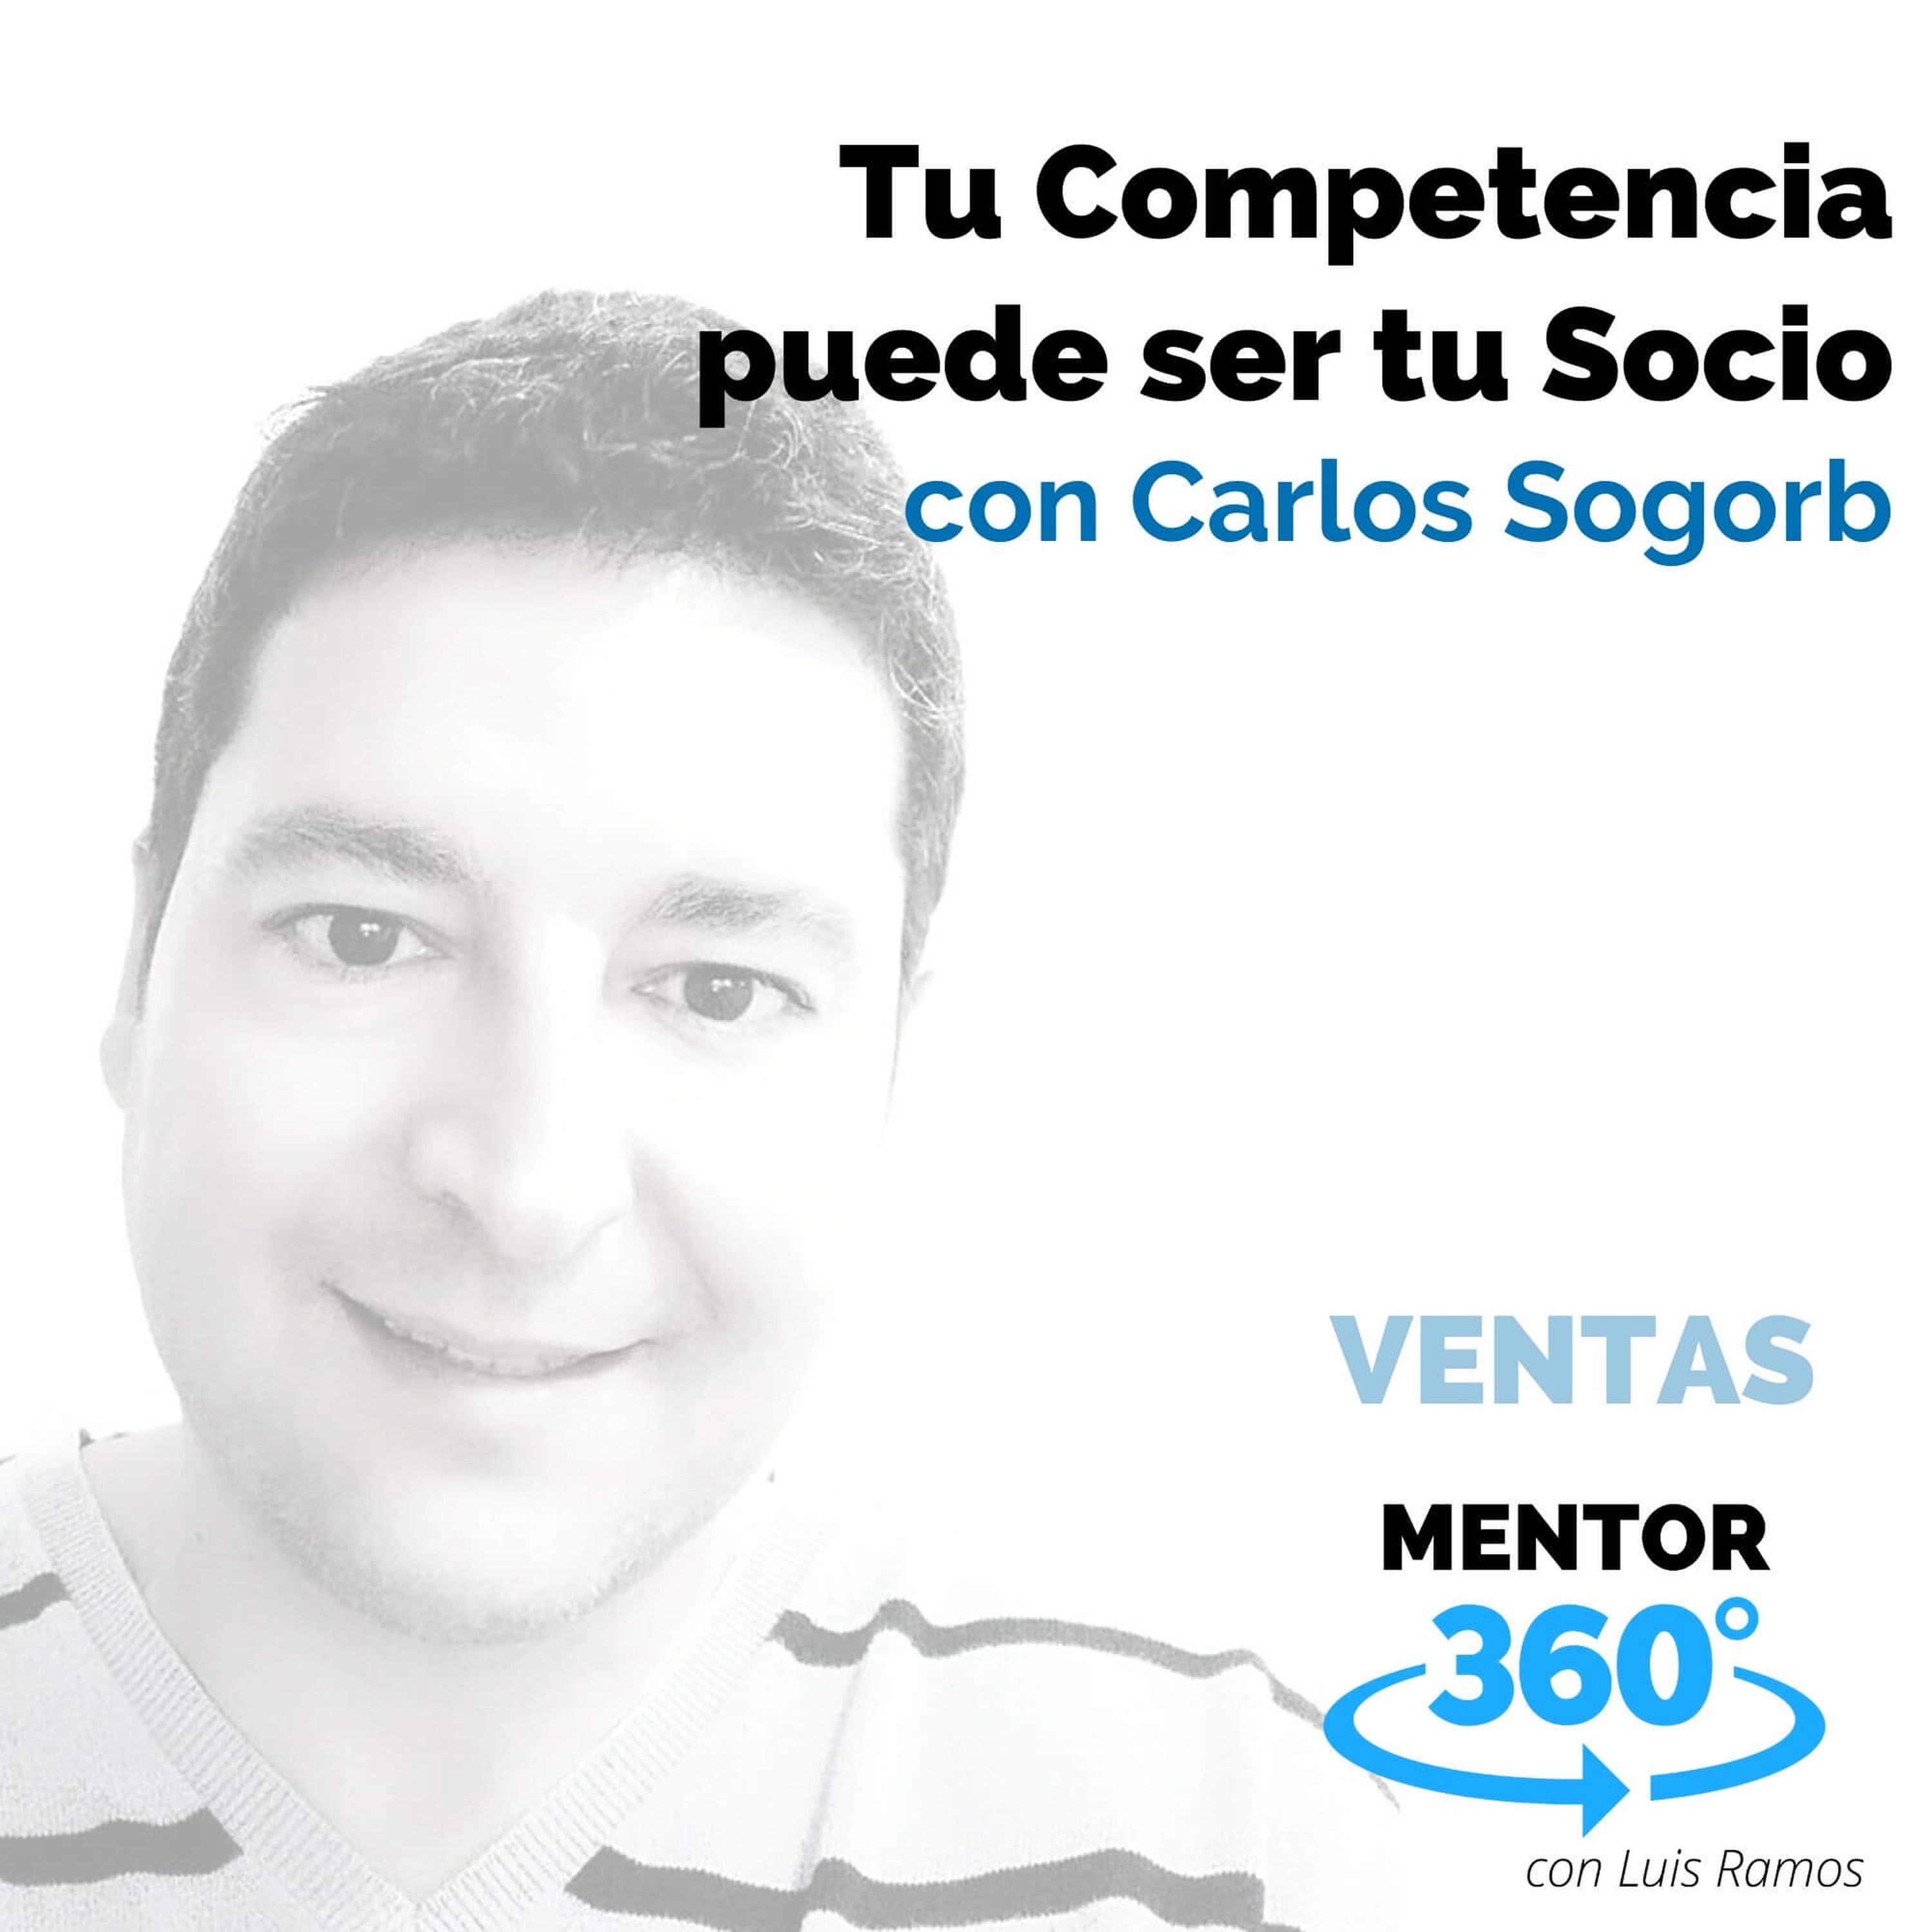 Tu Competencia puede ser Tu Socio, con Carlos Sogorb - VENTAS - MENTOR360